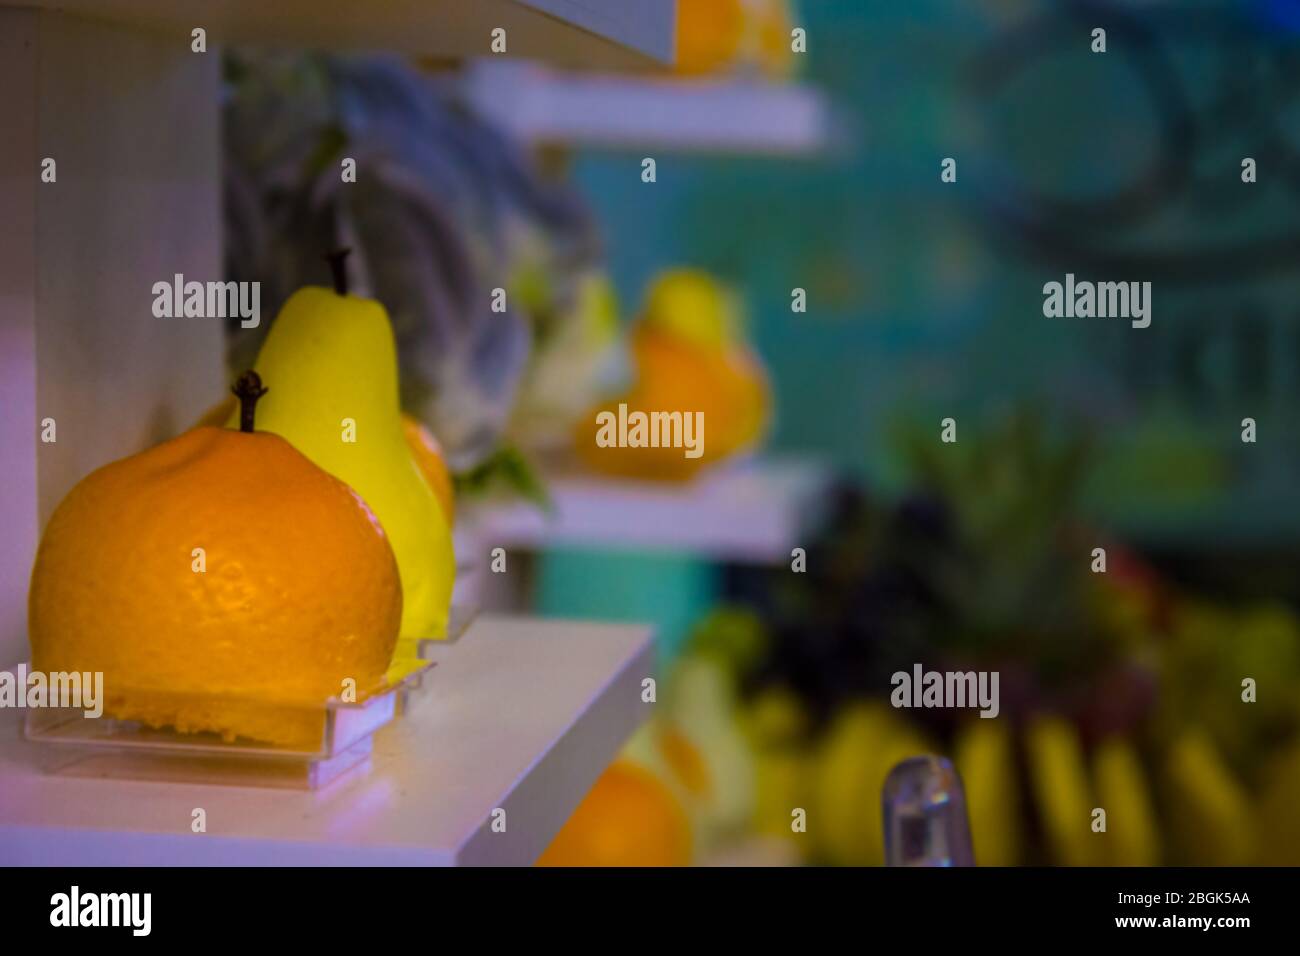 Dolce arancia cuoca con frutta forma un ripiano accanto ad altri frutti meno visibile in bokeh sullo sfondo Foto Stock